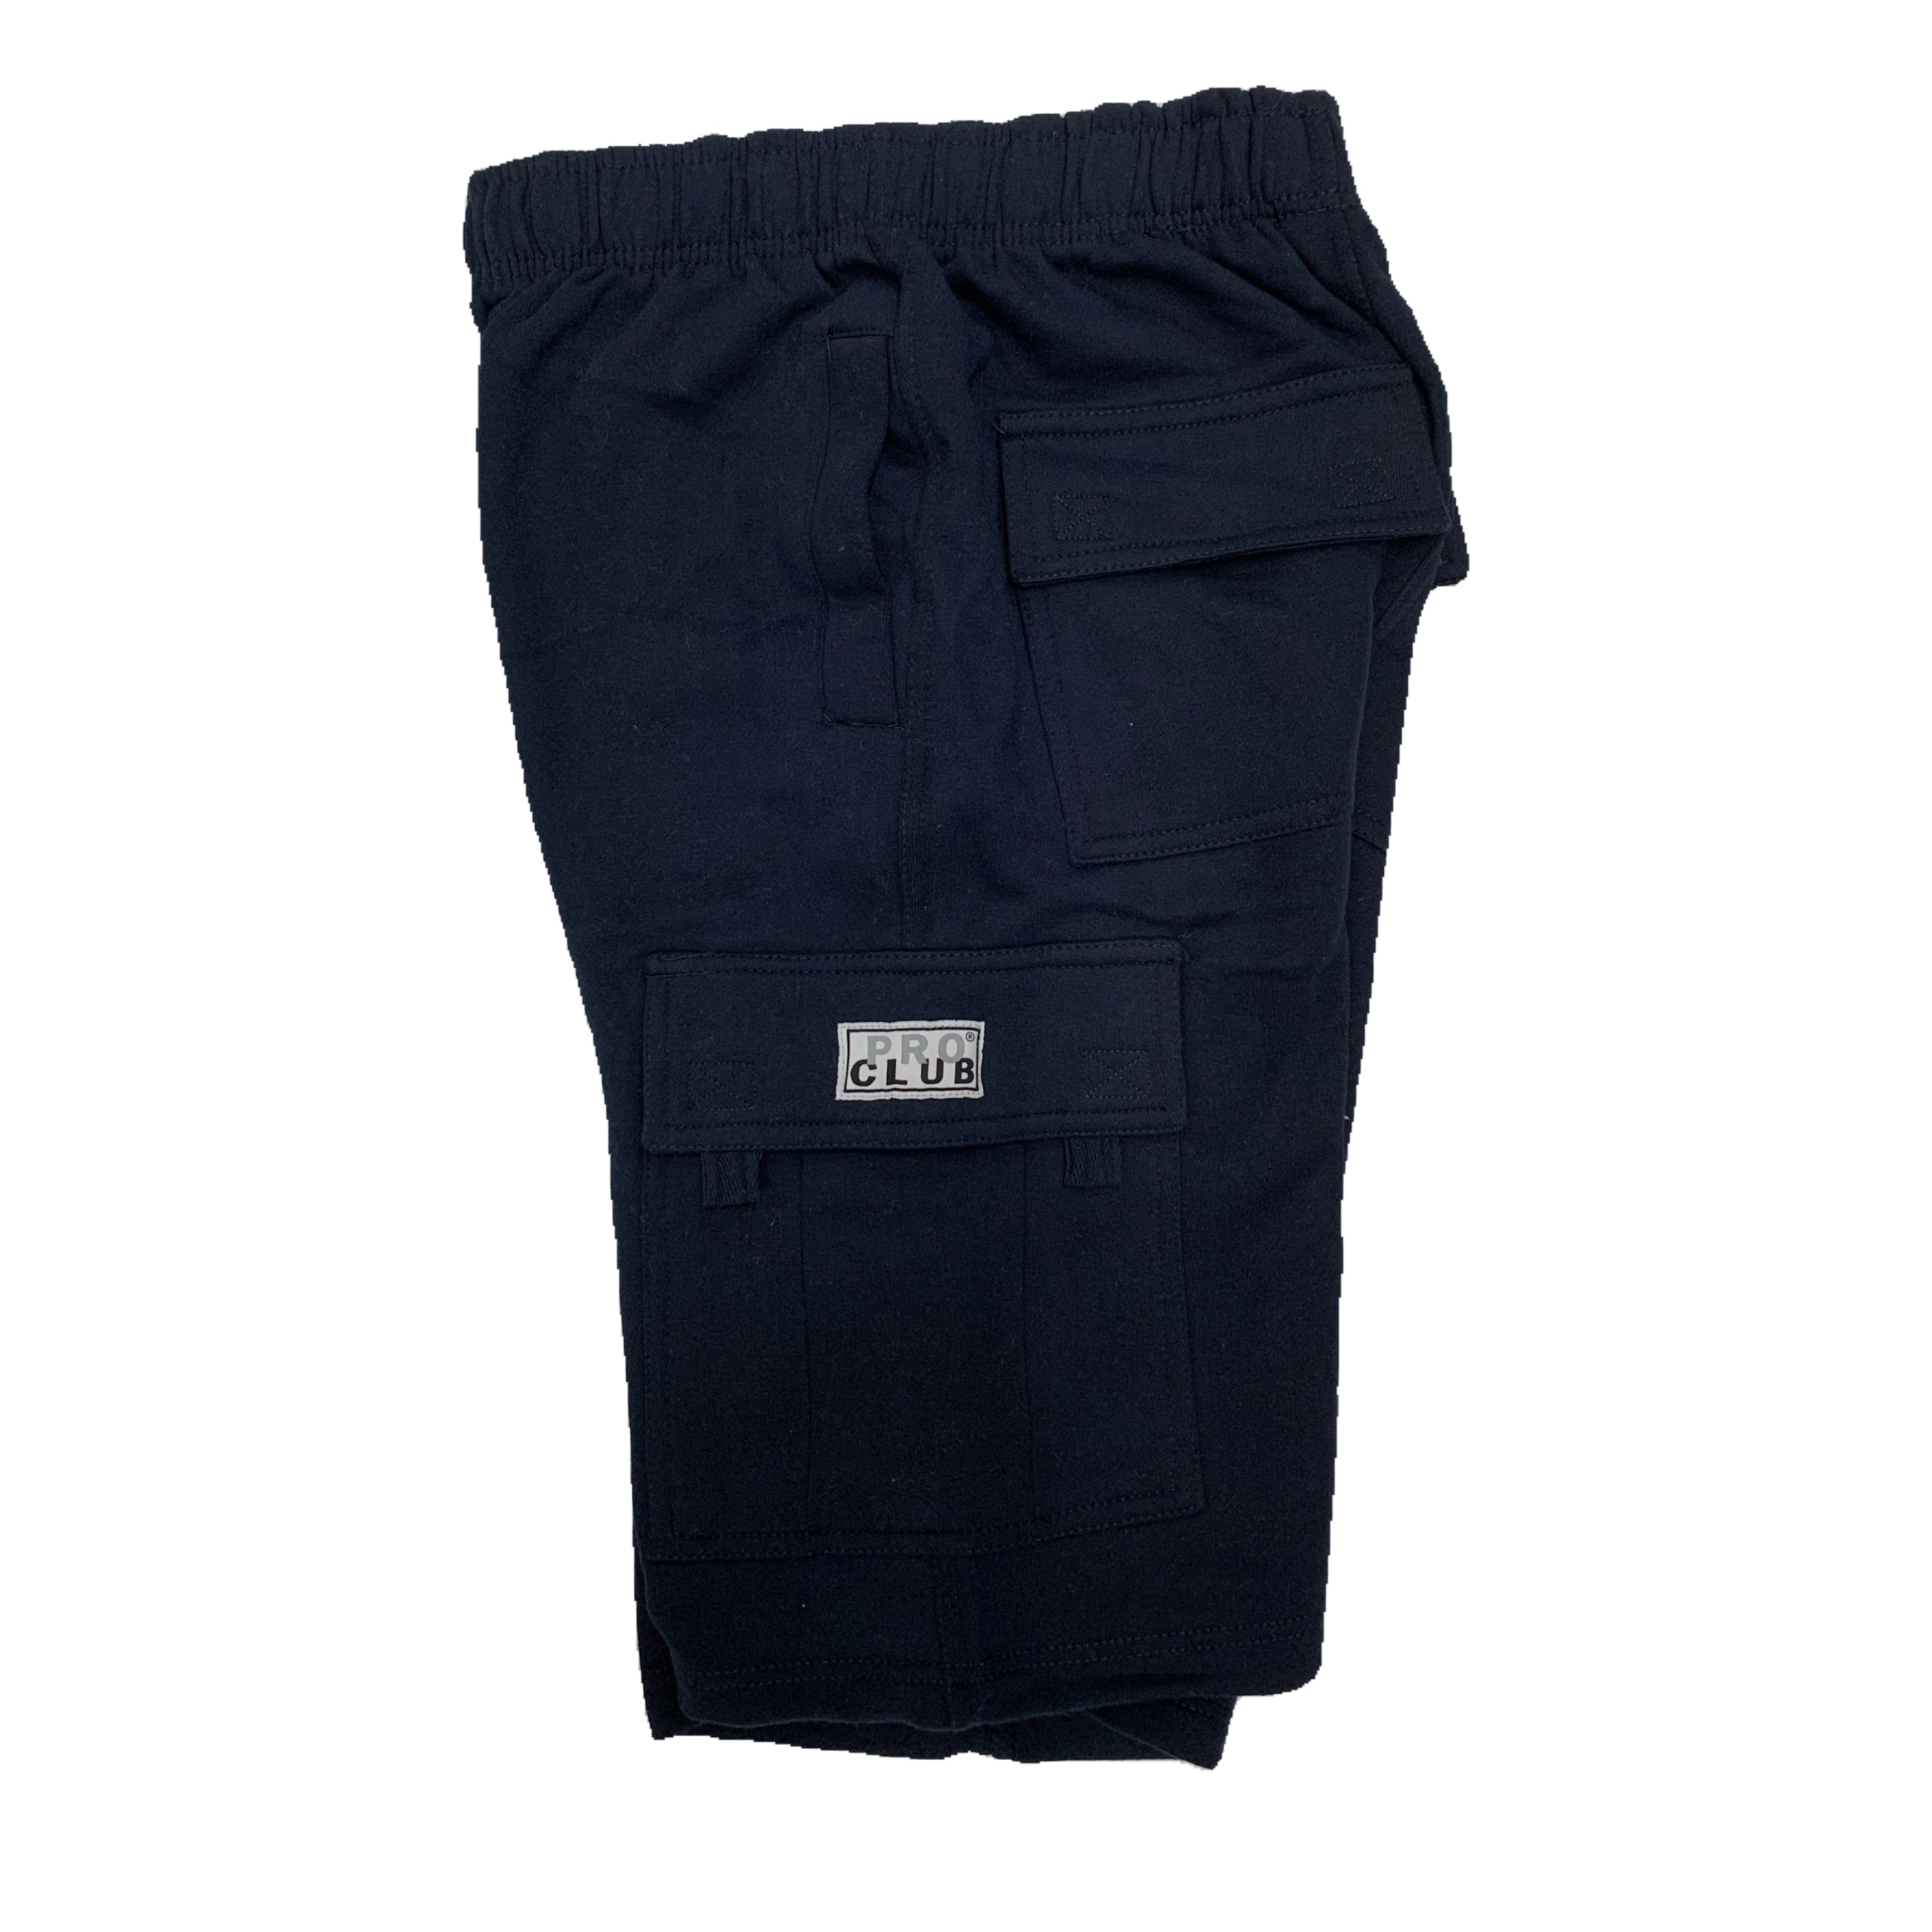 Pro Club Men's Fleece Cargo Shorts